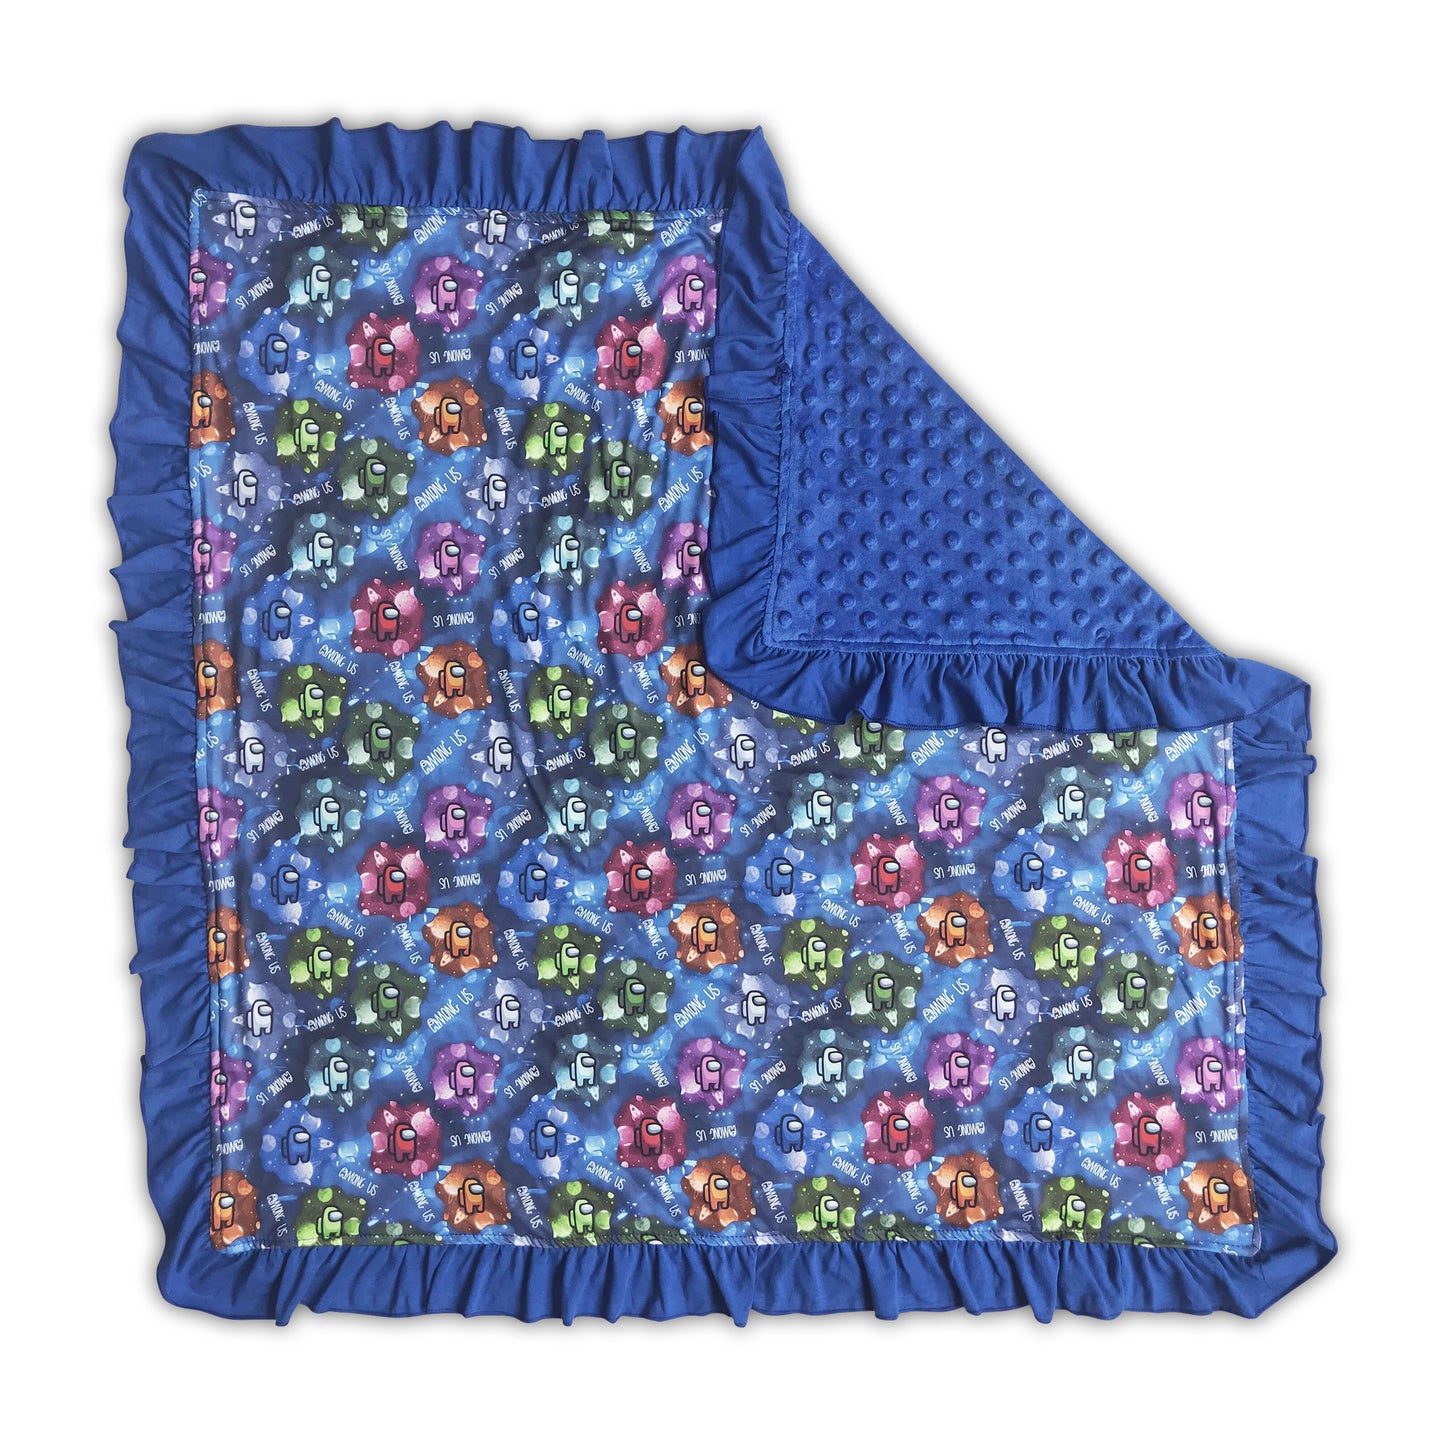 Baby blue ruffle minky blankets